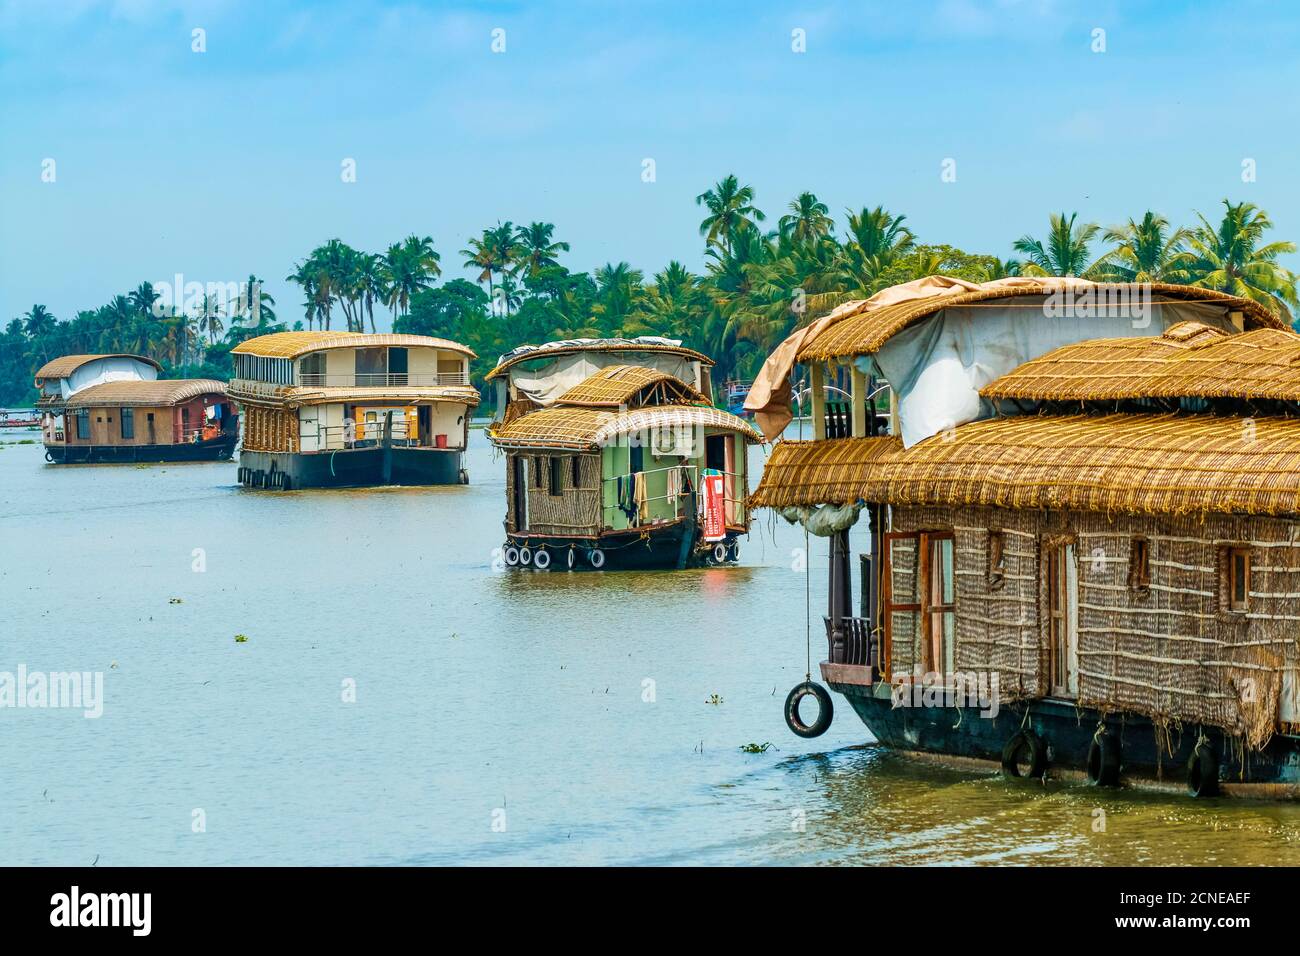 Kerala houseboats naviguant sur le lac Vembanad, le plus long lac de l'Inde, lors d'une excursion en arrière-plan, Alappuzha (Alleppey), Kerala, Inde, Asie Banque D'Images